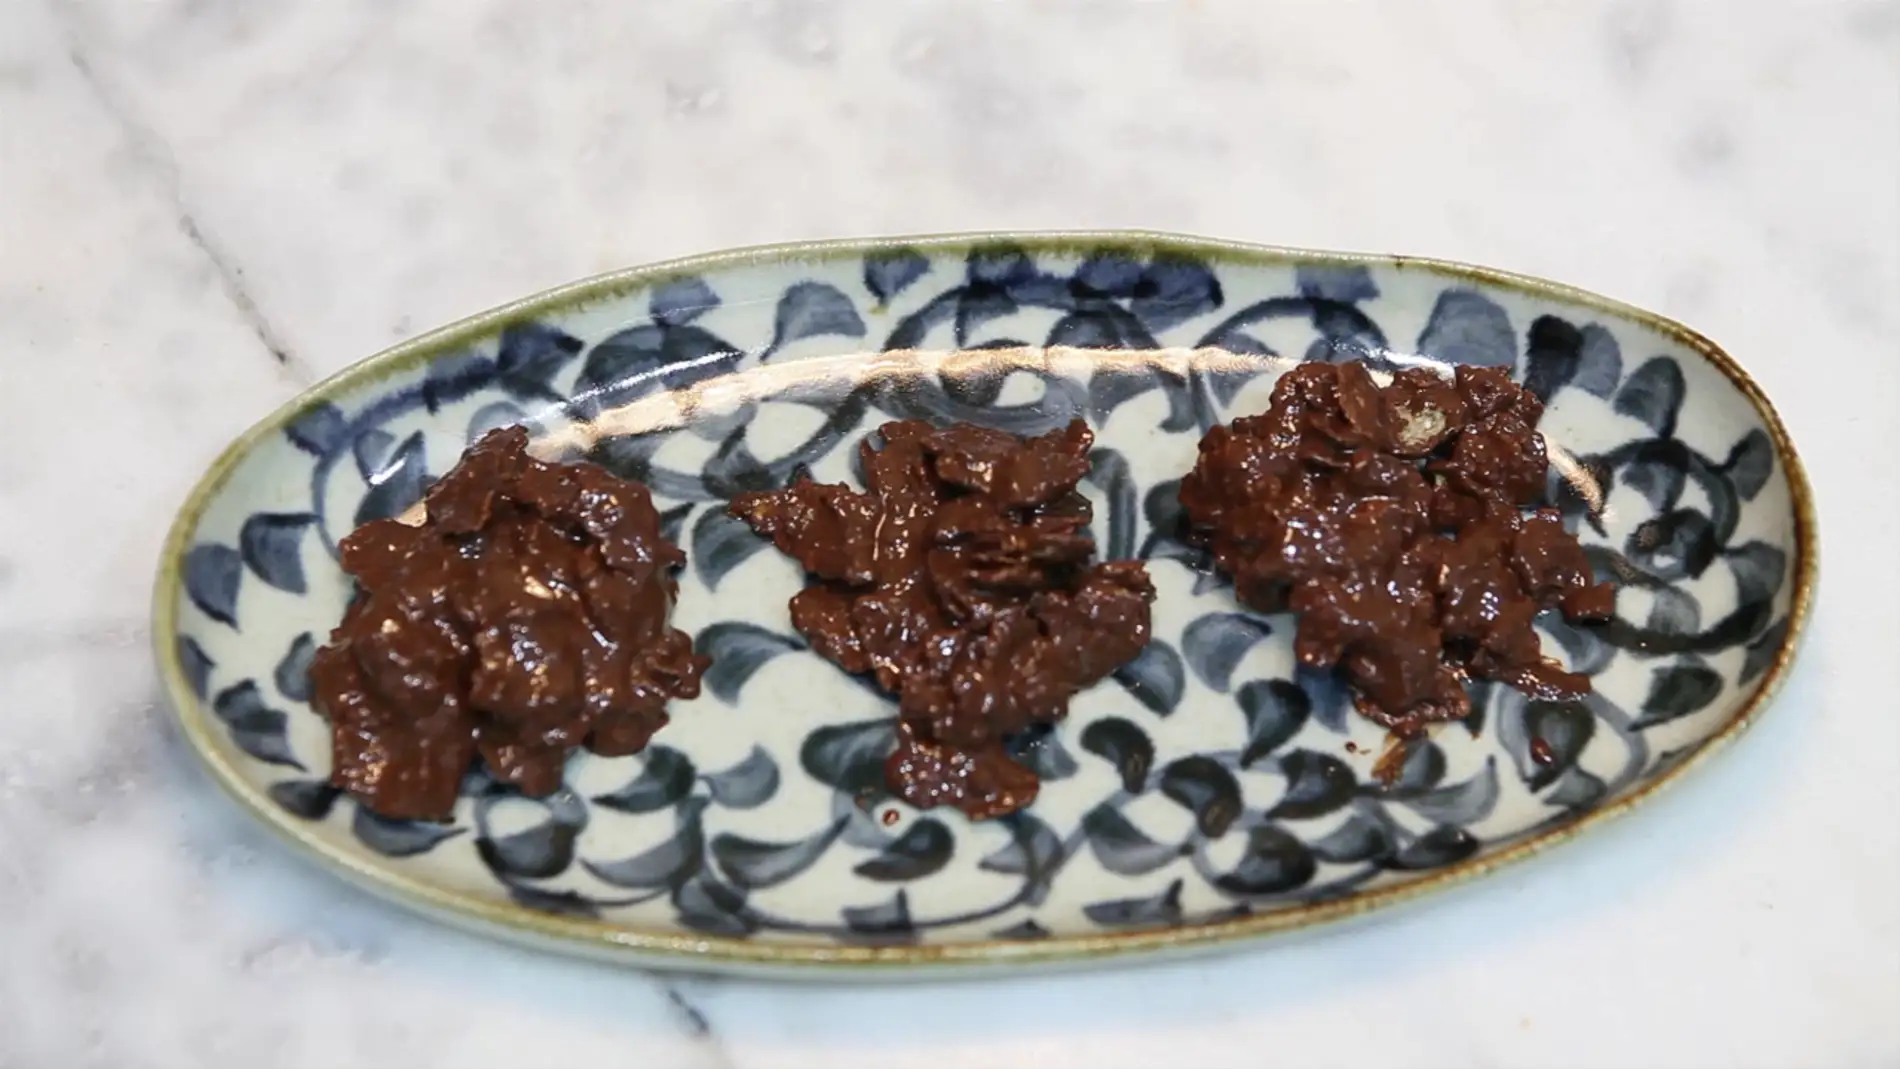 Frame 29.547576 de: Te enseñamos a preparar rocas de chocolate con cereales